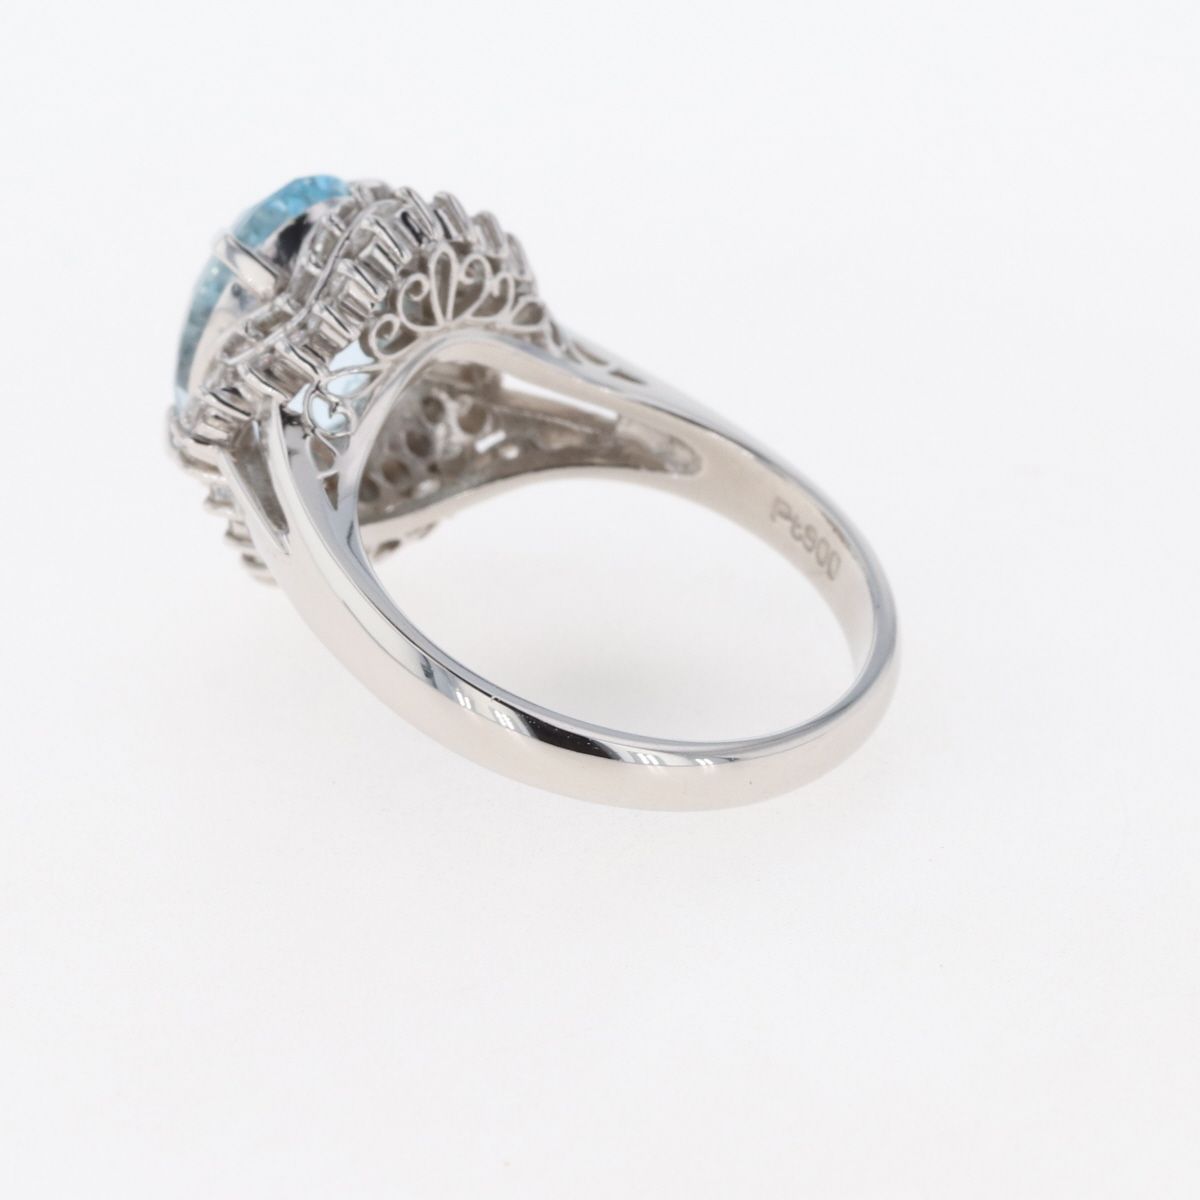 ブルートパーズ デザインリング プラチナ メレダイヤ 指輪 リング 12号 